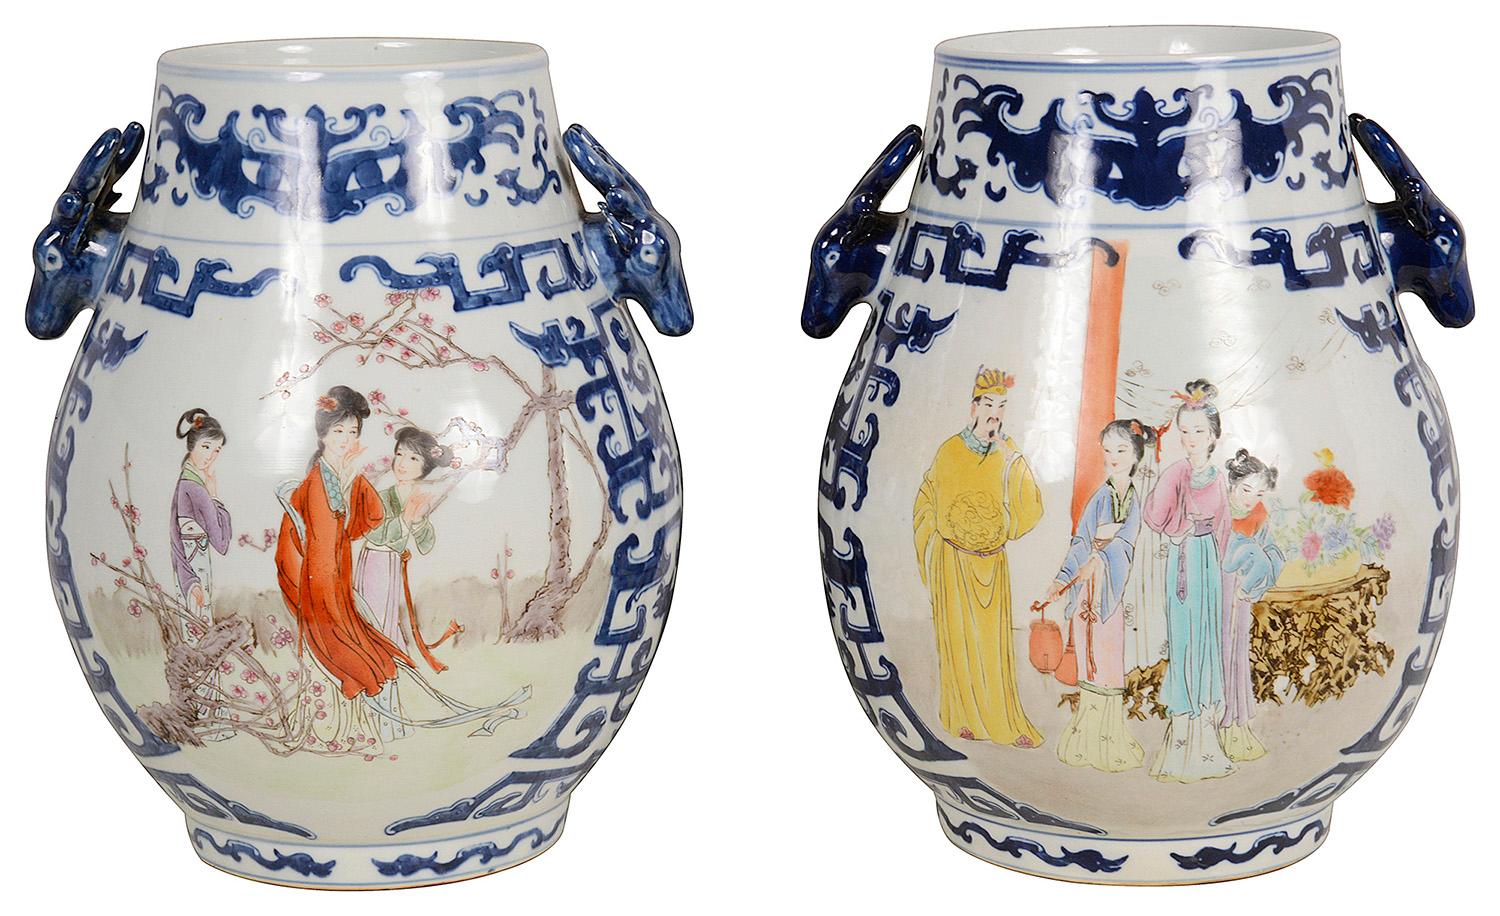 Ein sehr dekoratives Paar chinesischer Porzellanvasen/Lampen des 20. Jahrhunderts.
Jeweils mit blau gefärbten Bordüren mit klassizistischen Motiven und Griffen mit Hirschköpfen sowie handgemalten Tafeln, auf denen Frauen in Begleitung von Blumen